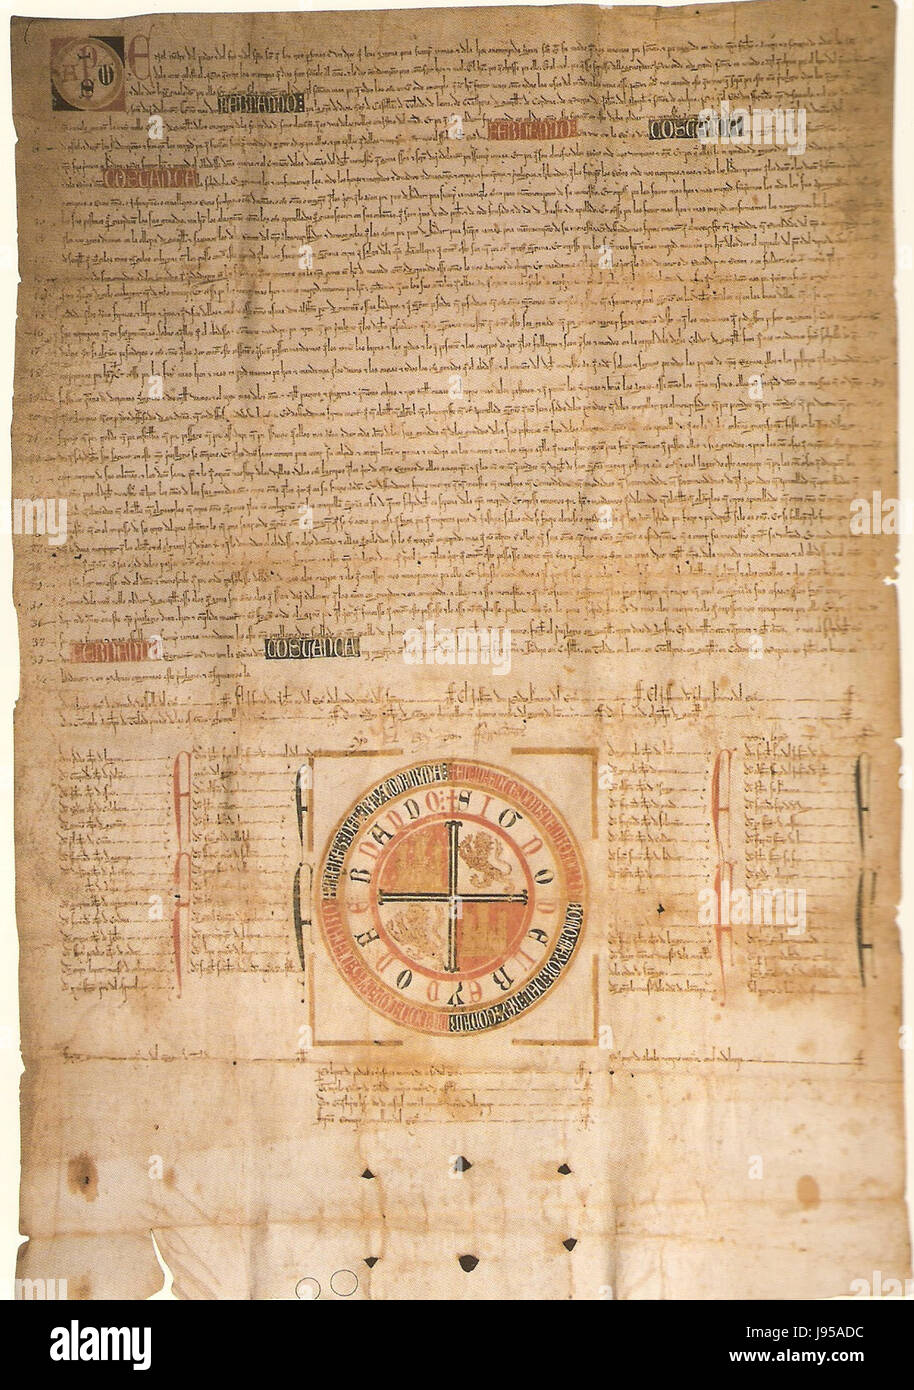 Privilegio Rodado de Fernando IV de Castilla Confirmando Los Privilegios Que Alfonso X y Sancho IV Concedieron al Monasterio de San Clemente de Sevilla (13 8 1310) Stockfoto